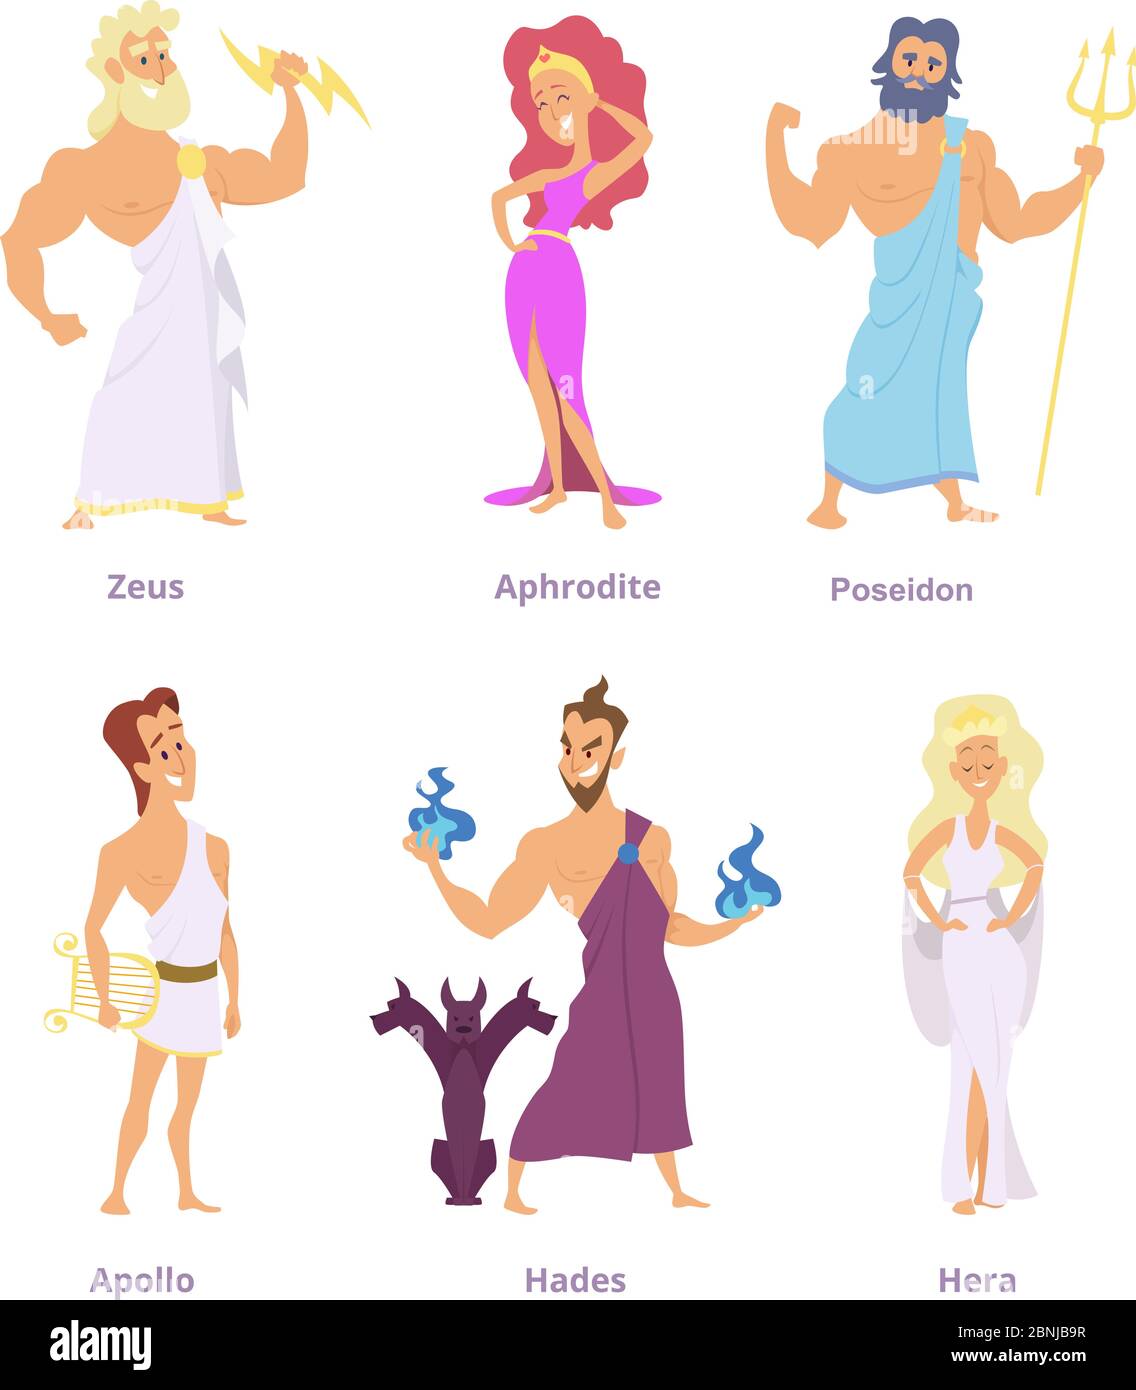 Mythologie grecque ancienne. Les dieux et déesses de l'olympe. Personnages amusants de dessin animé Illustration de Vecteur